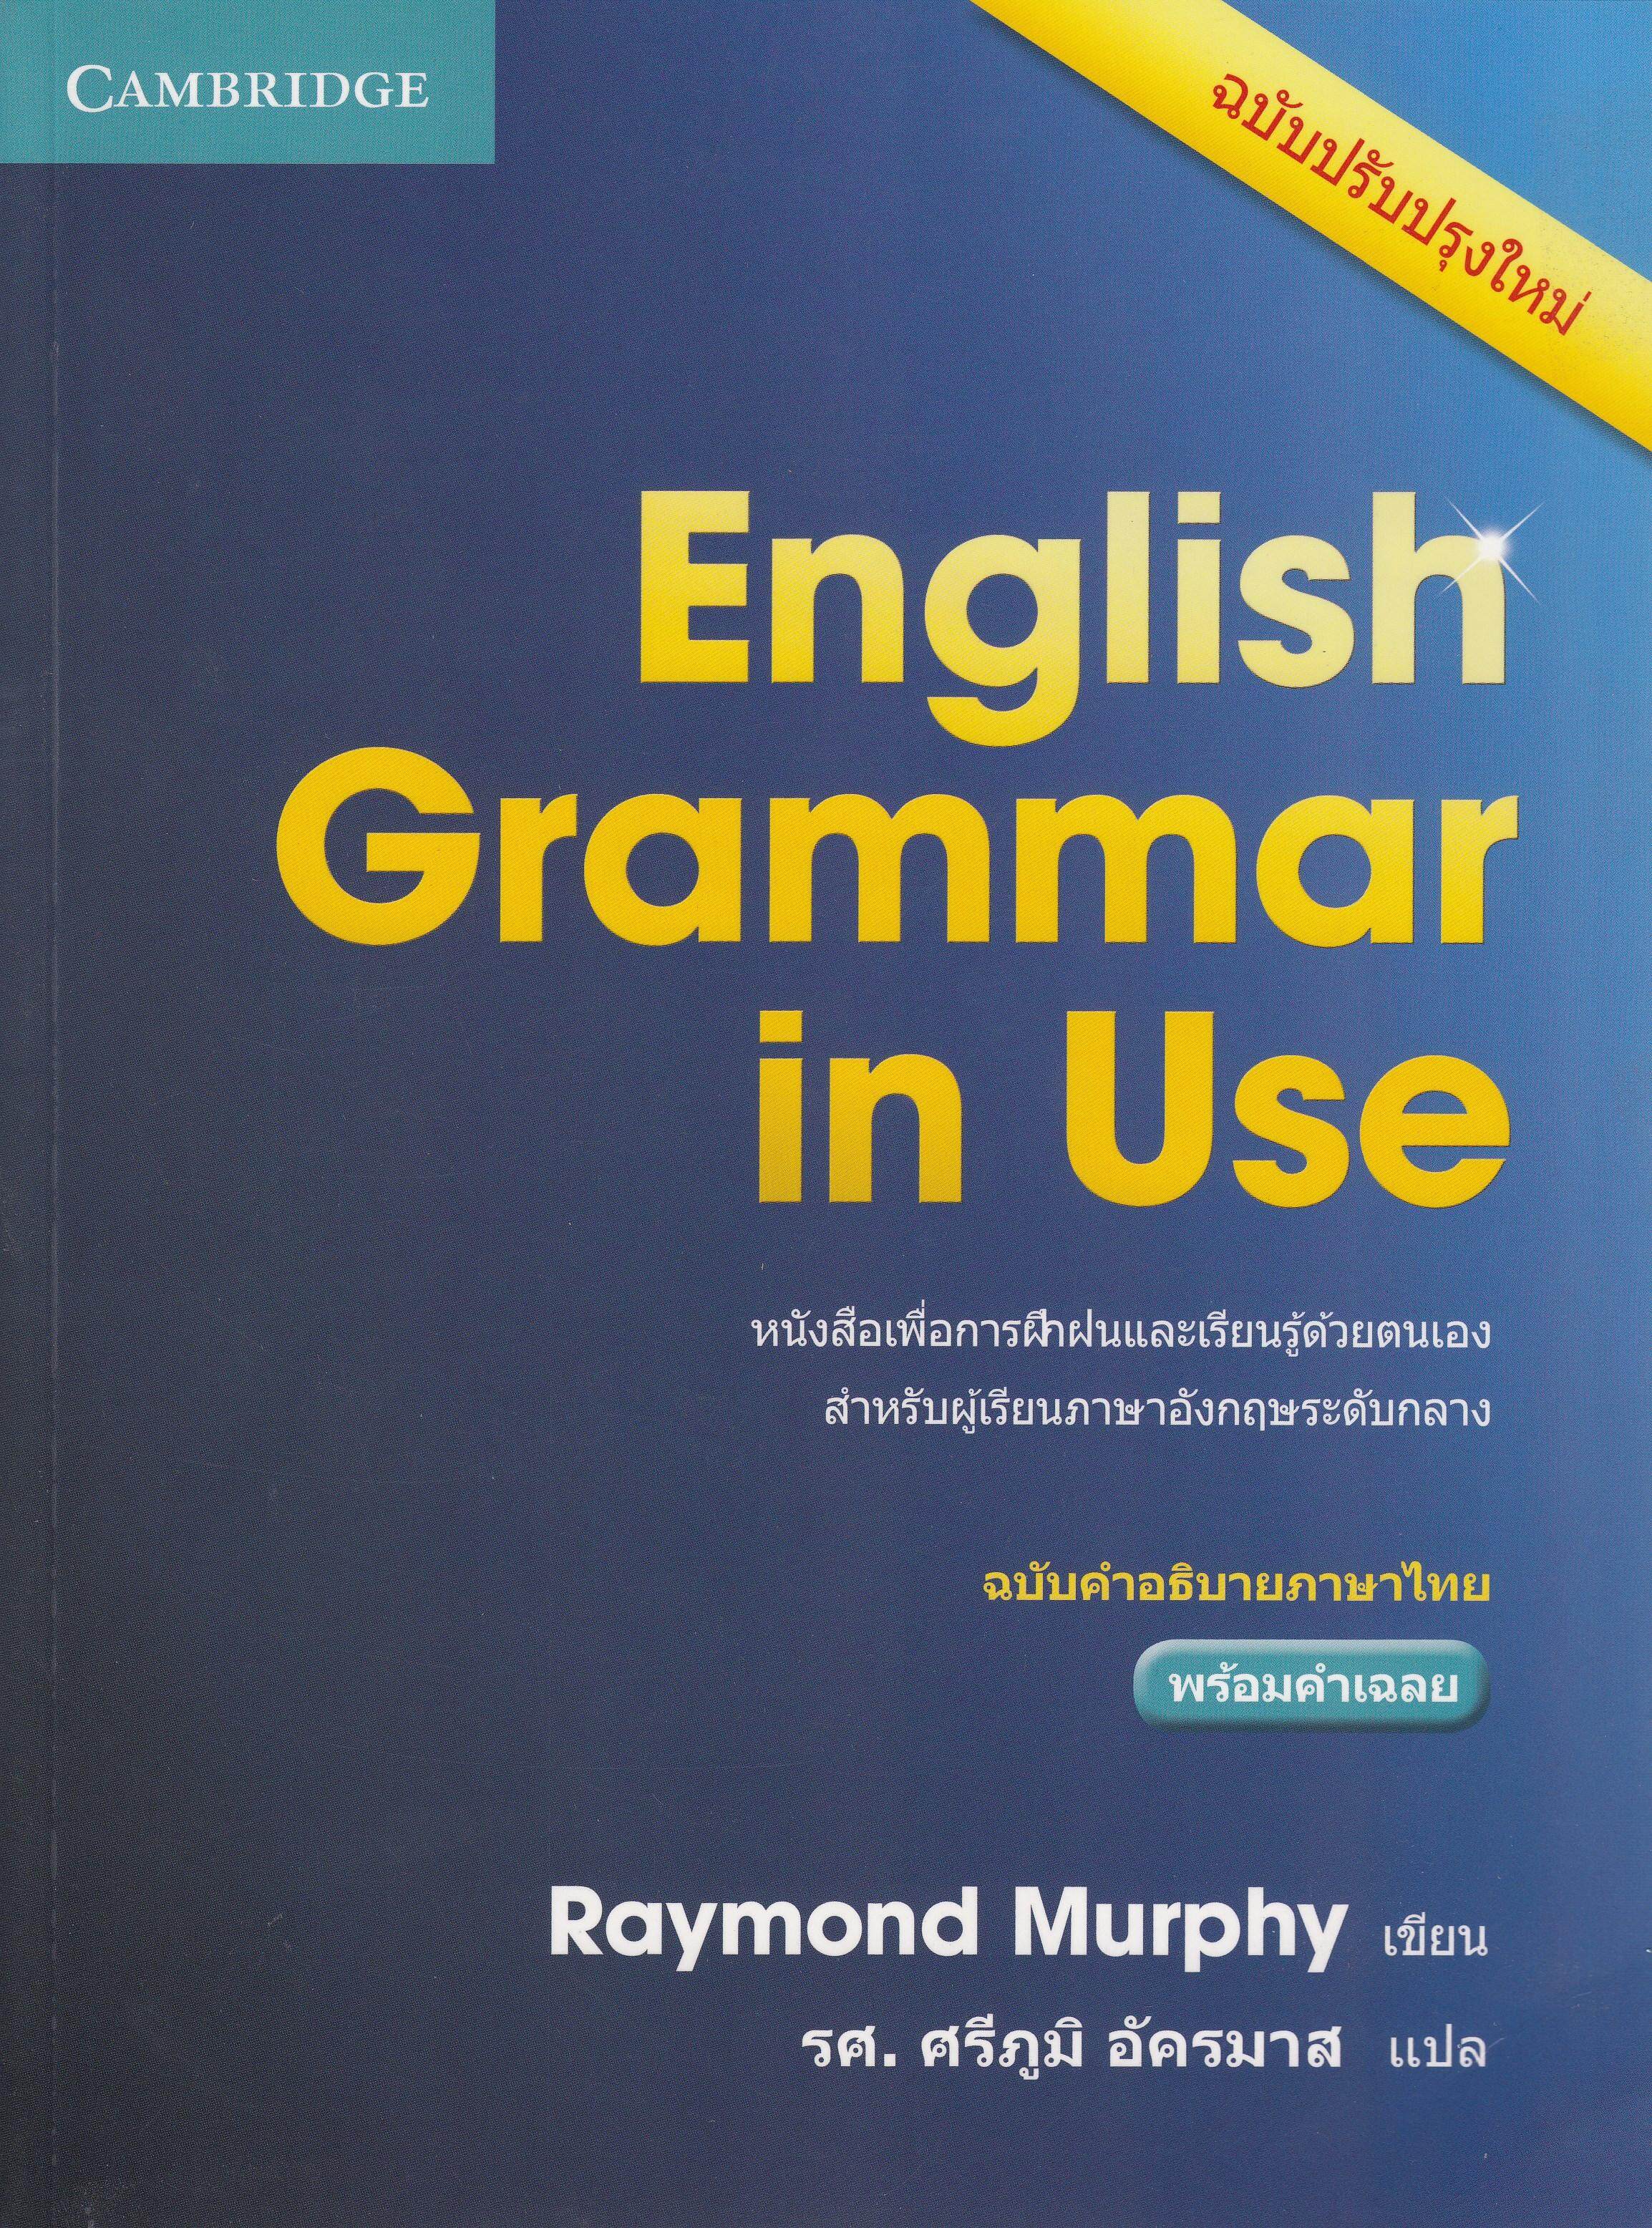 หนังสือ ENGLISH GRAMMAR IN USE 4 ED. (ฉบับคำอธิบายภาษาไทย) by DK TODAY